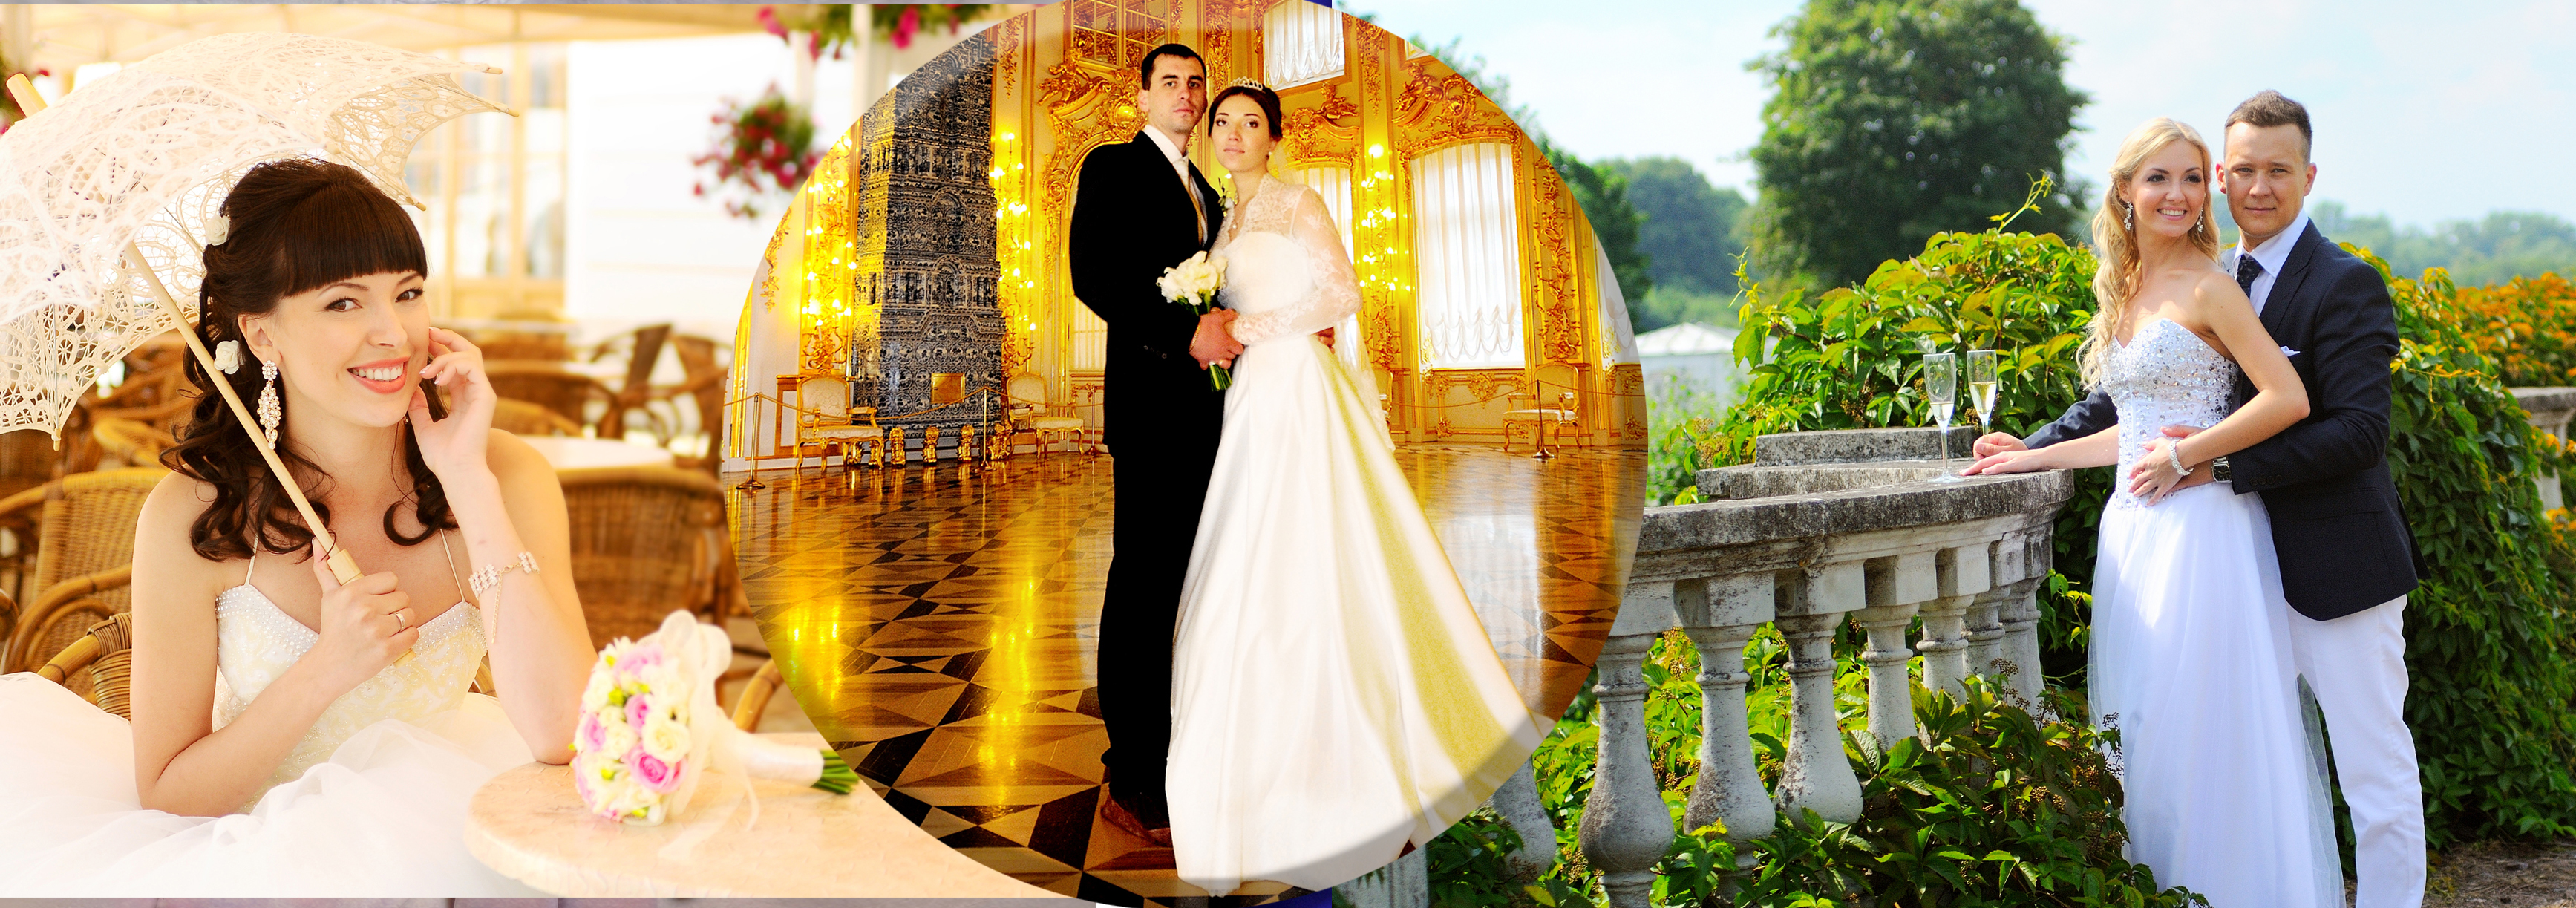 Свадебная фотосъемка в Санкт-Петербурге, идеи свадебной фотосессии